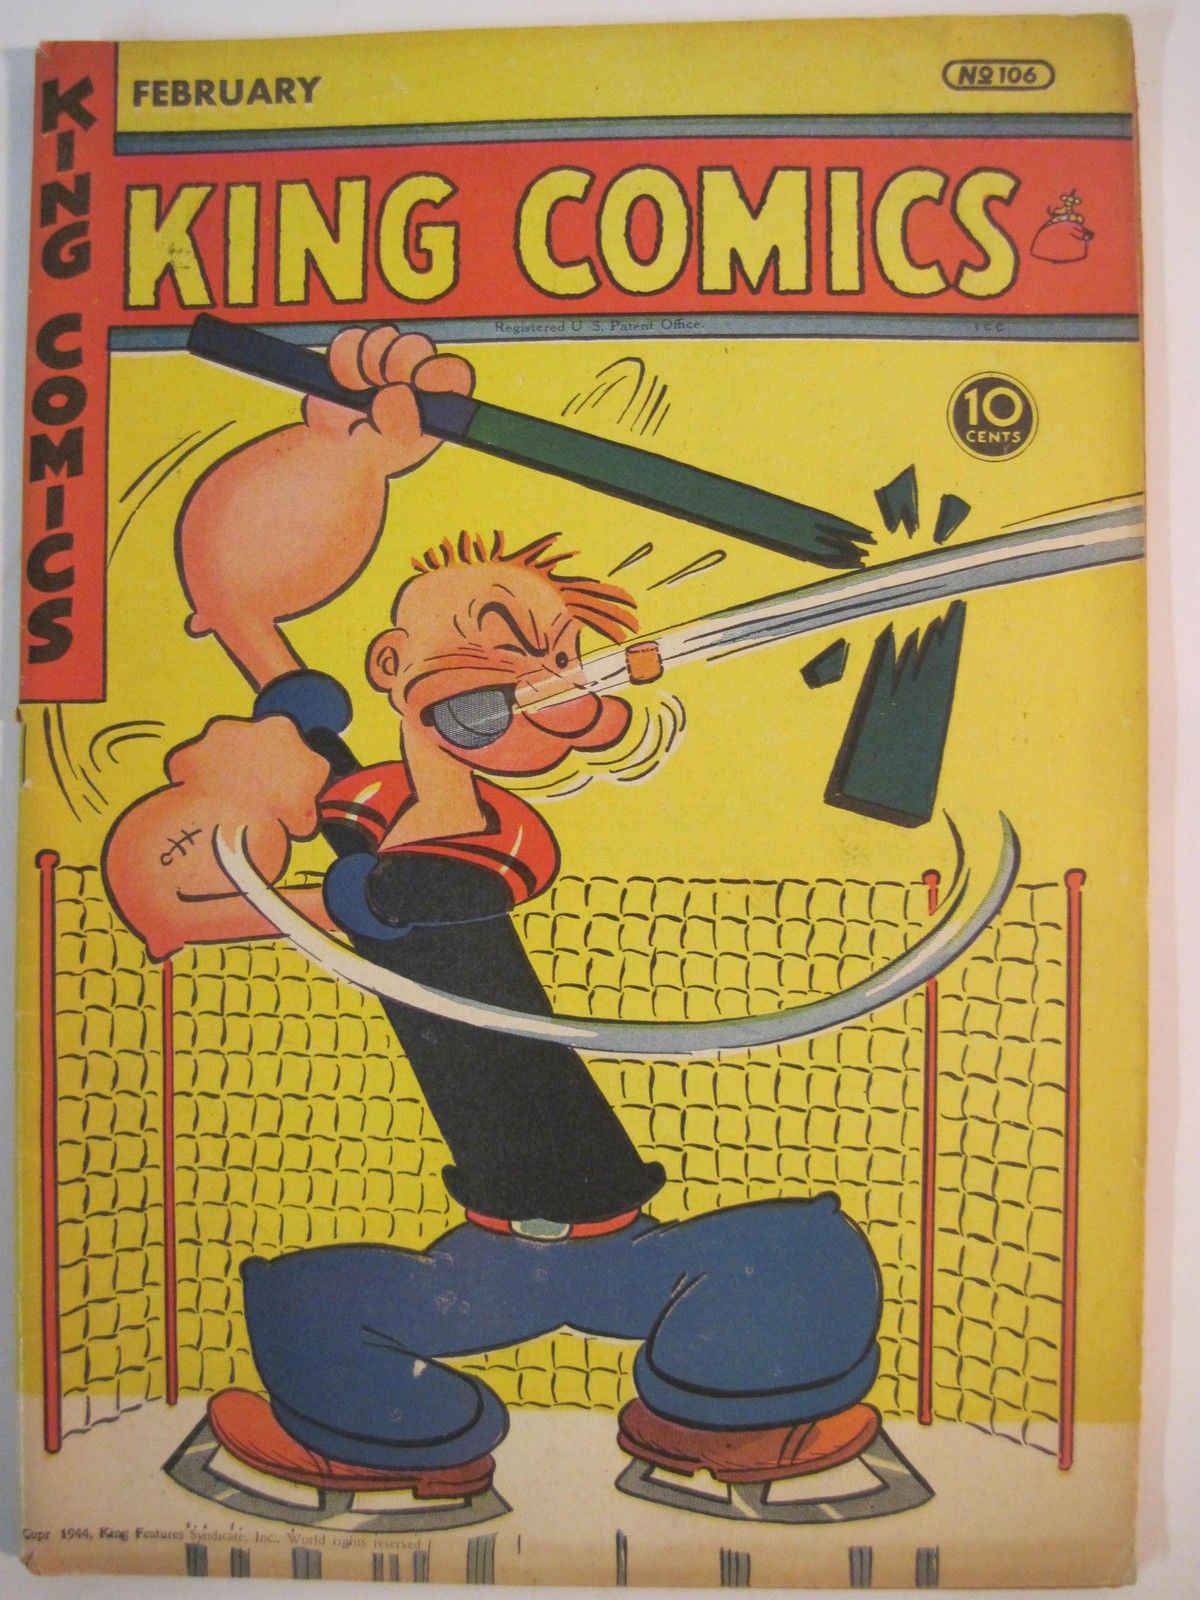 Popeye Ice Hockey Goalie - King Comics No 106 - 1945 | HockeyGods